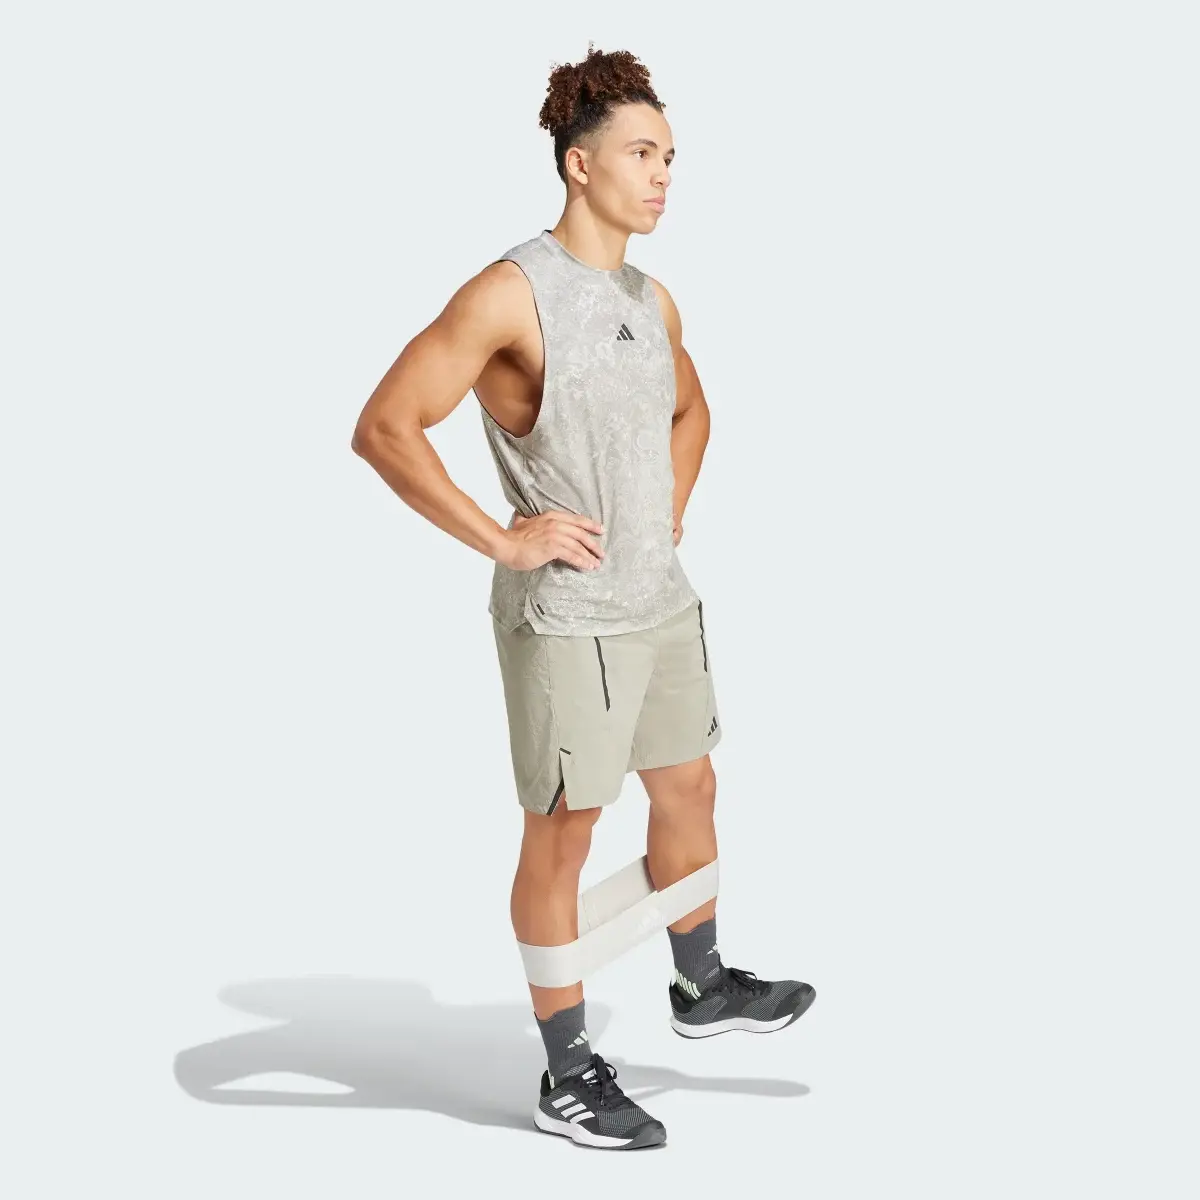 Adidas Designed for Training Workout Shorts. 3